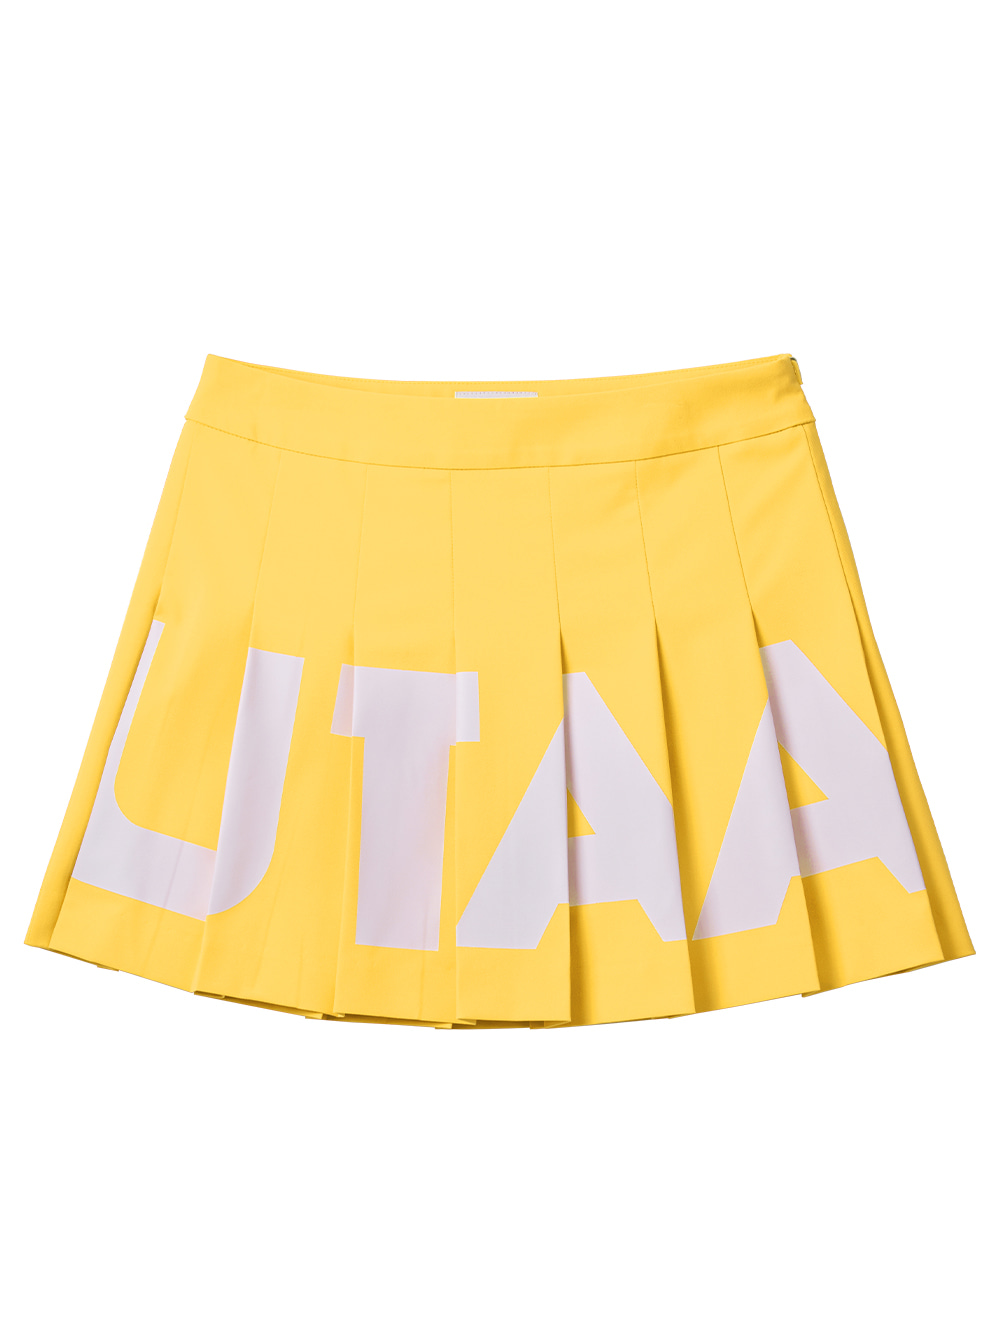 UTAA Bold Neon Skirt : Yellow (UB3SKF531YE)